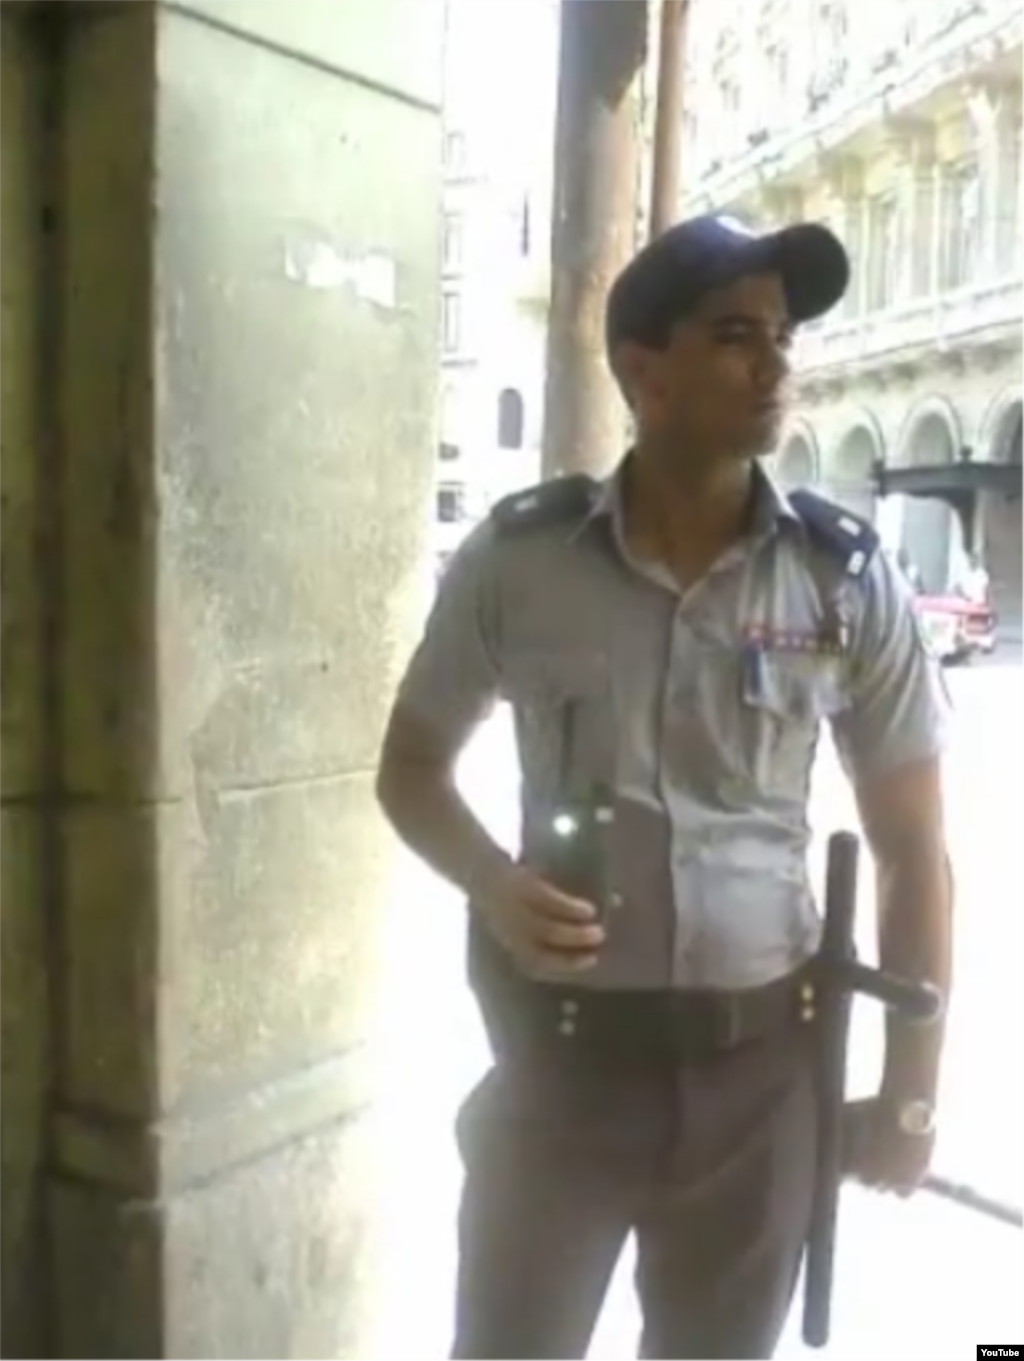 Reporta Cuba policias vigilan opositores 